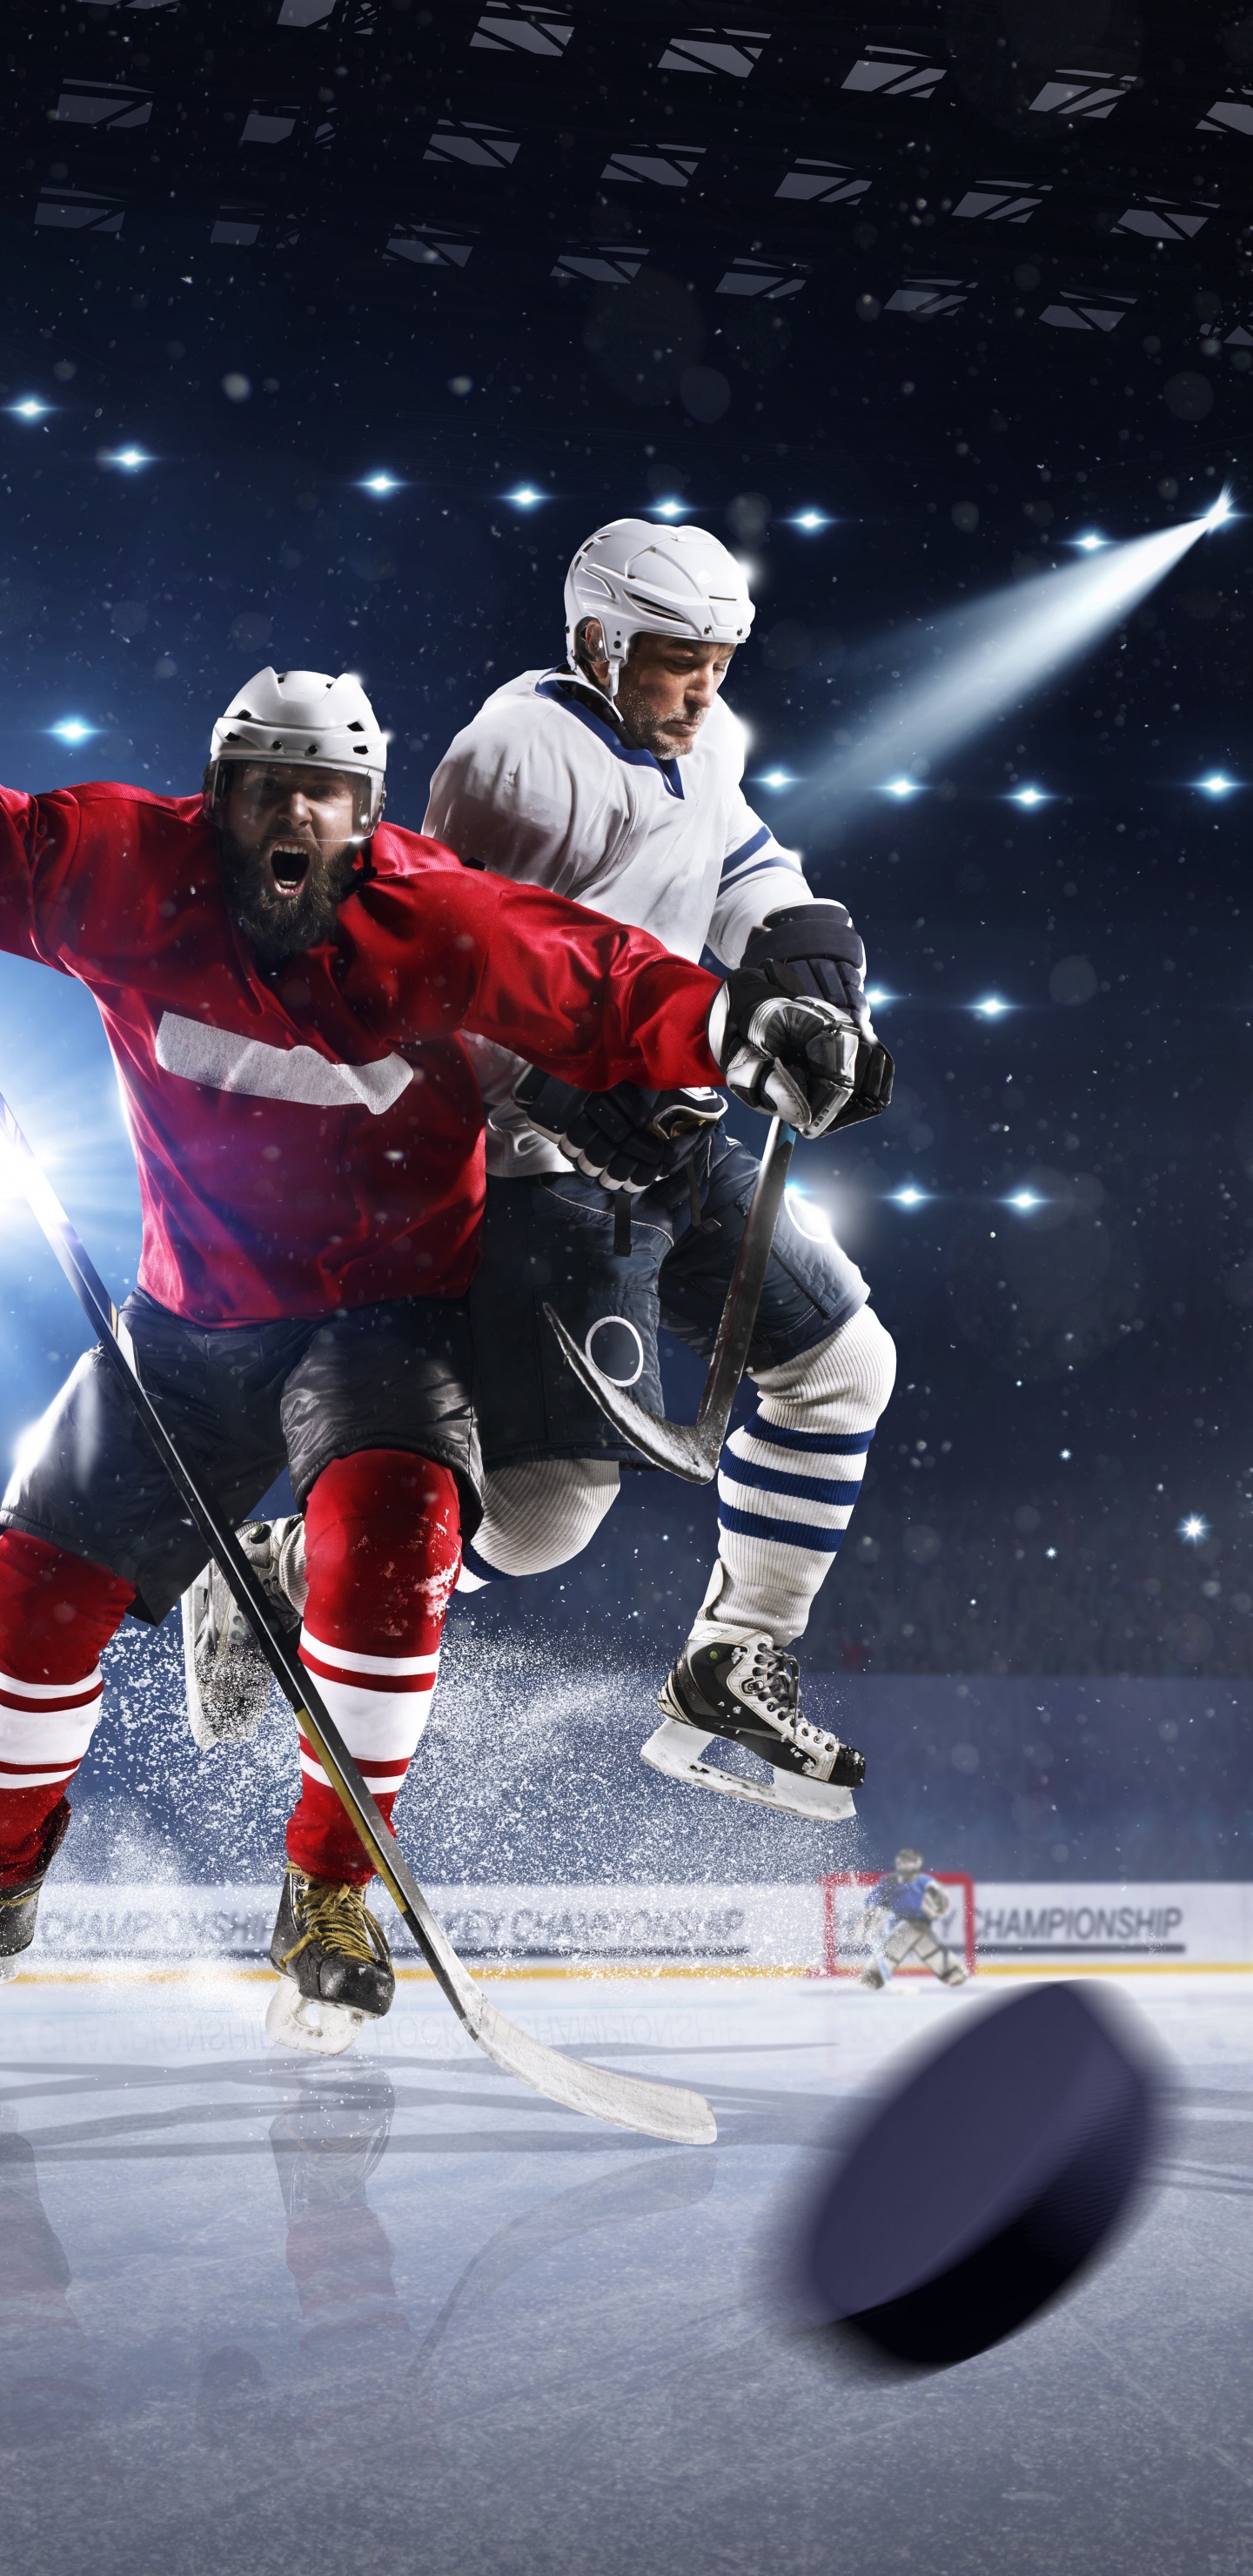 Joueurs de Hockey Sur Glace Sur le Terrain de Hockey Sur Glace. Wallpaper in 1440x2960 Resolution